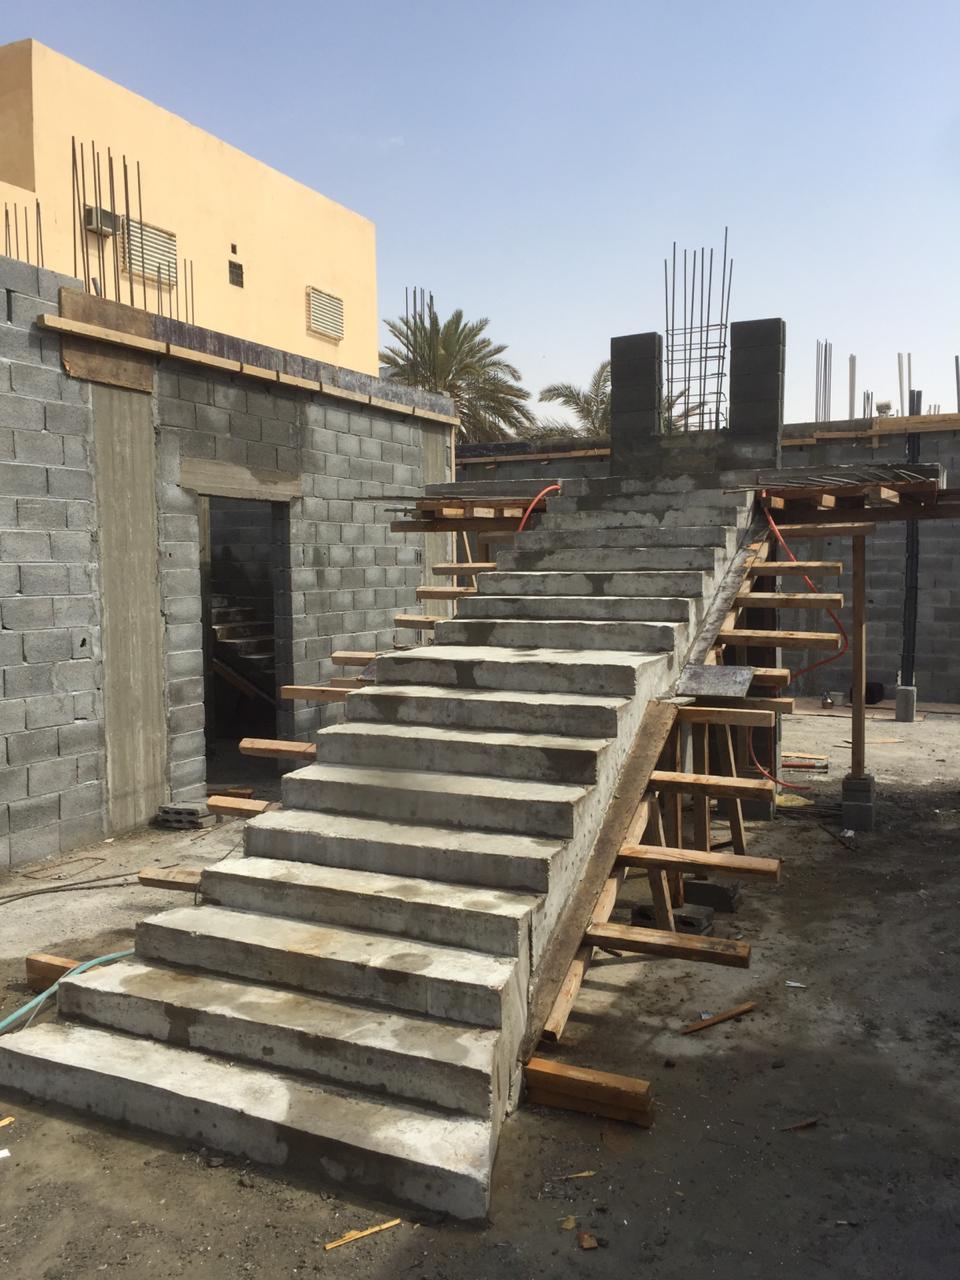 مقاول بناء ملاحق في الرياض 0533266762  مقاول عظم اسود بالرياض، P_1695w9ac09